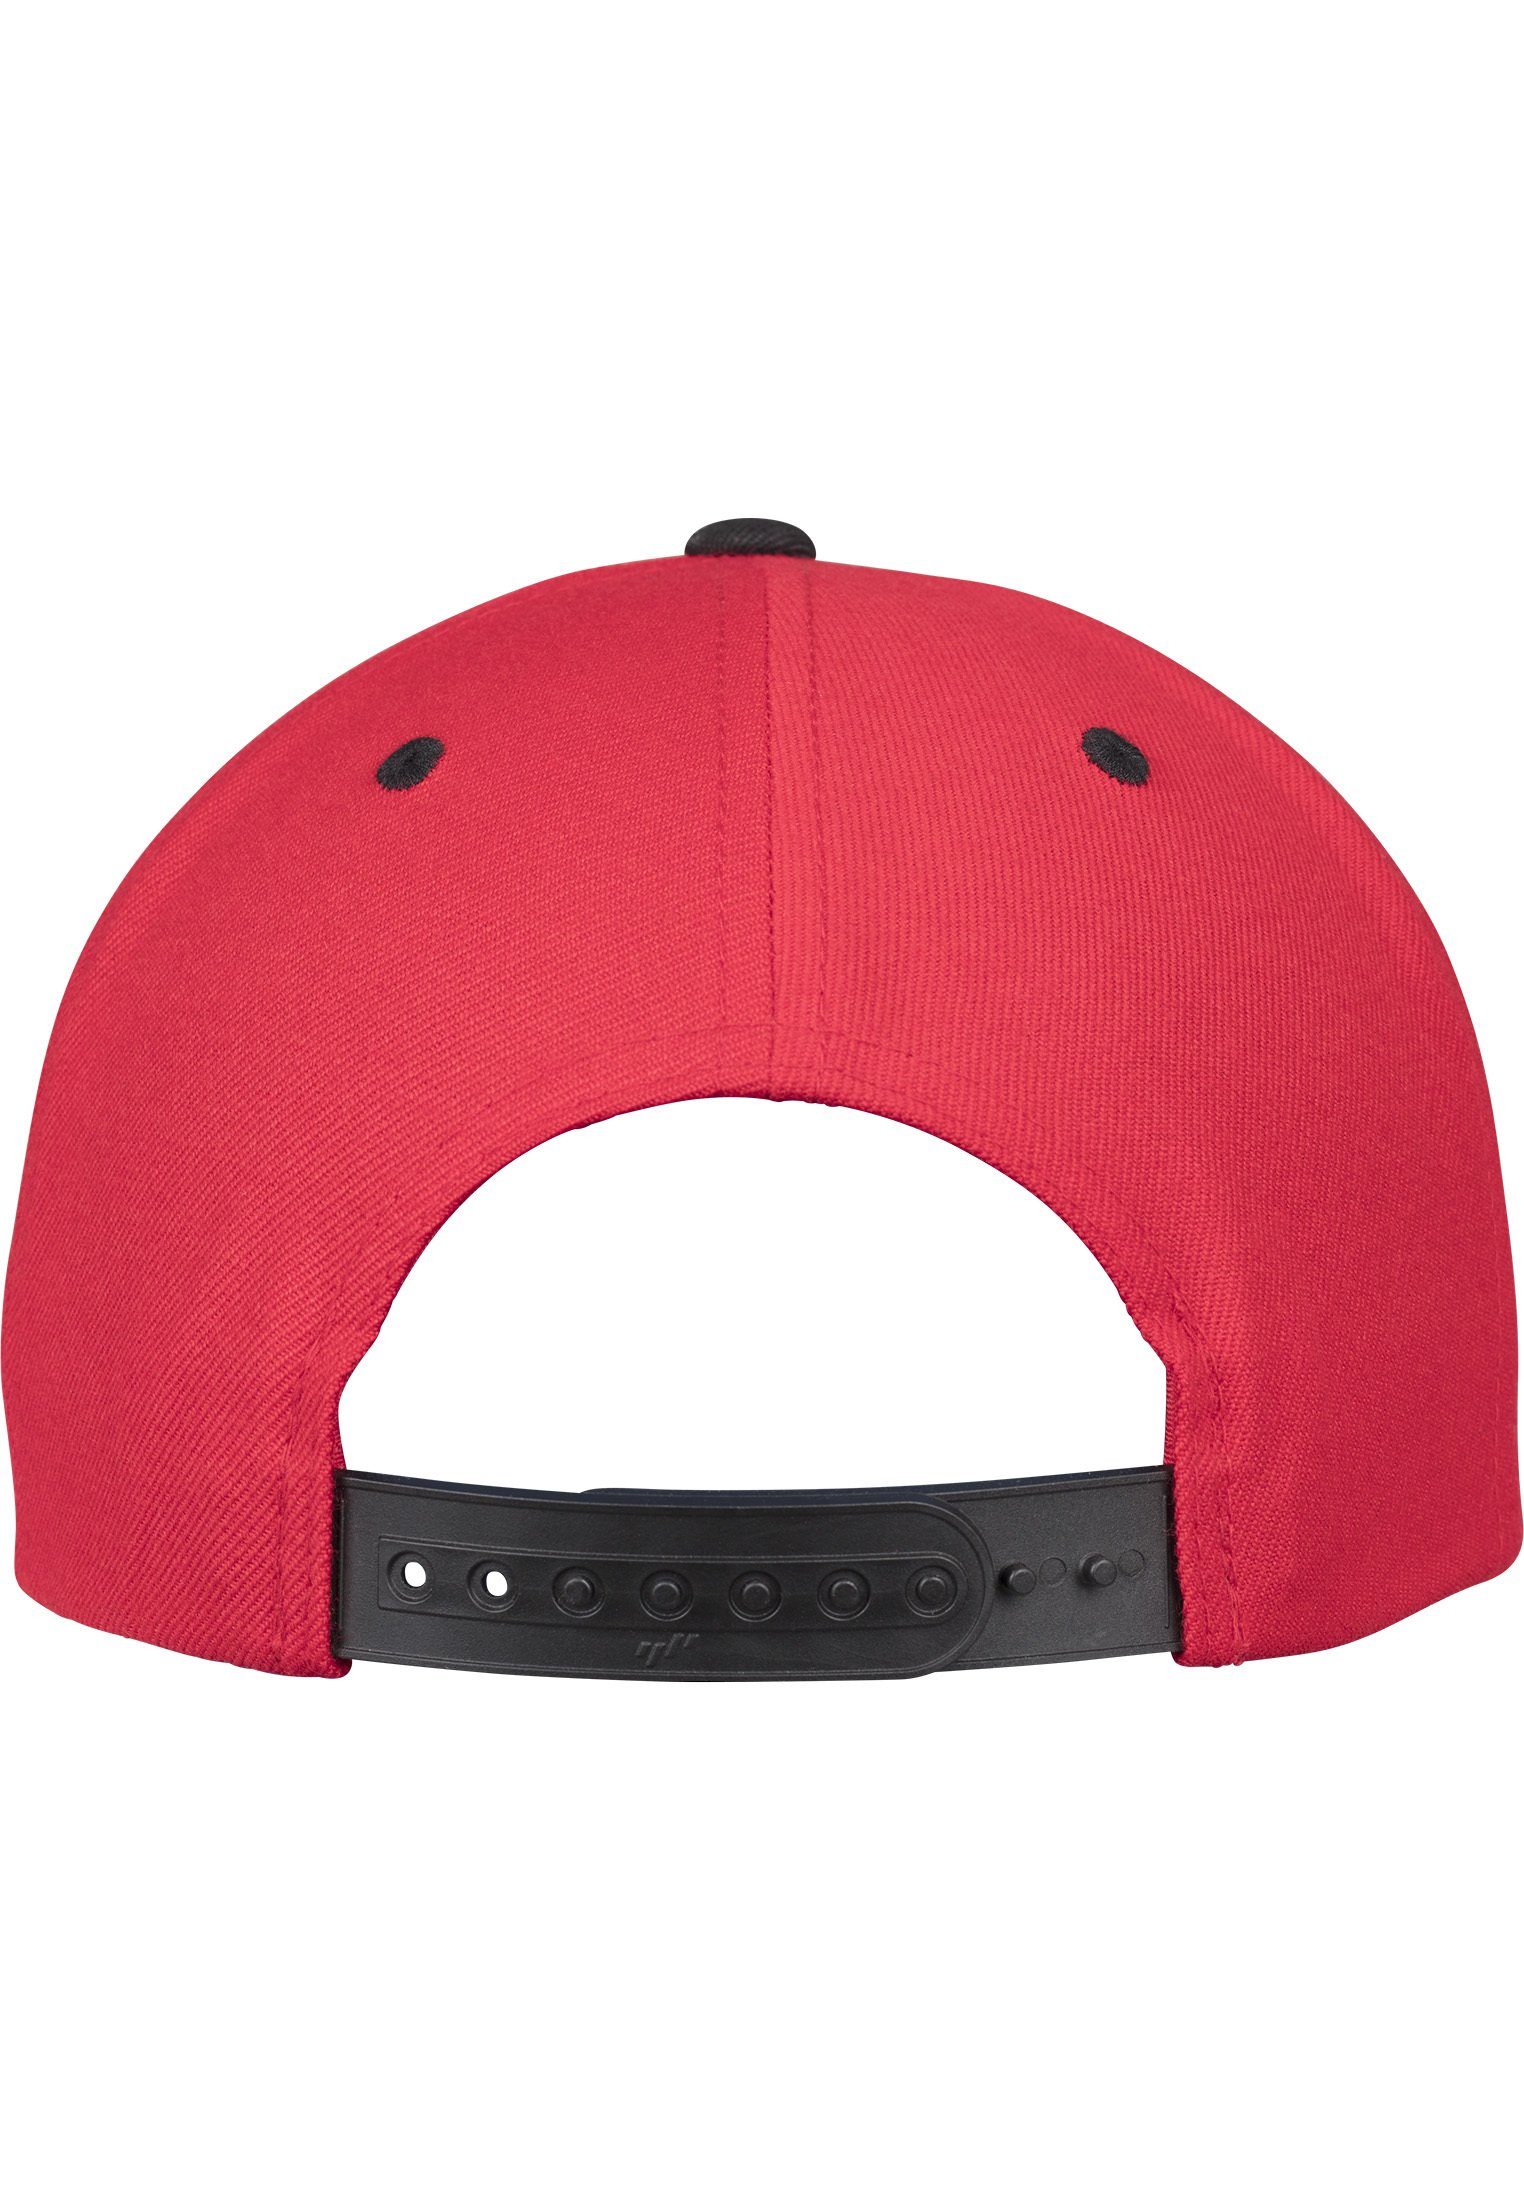 Flexfit Flex Snapback Classic Cap red/black 2-Tone Snapback